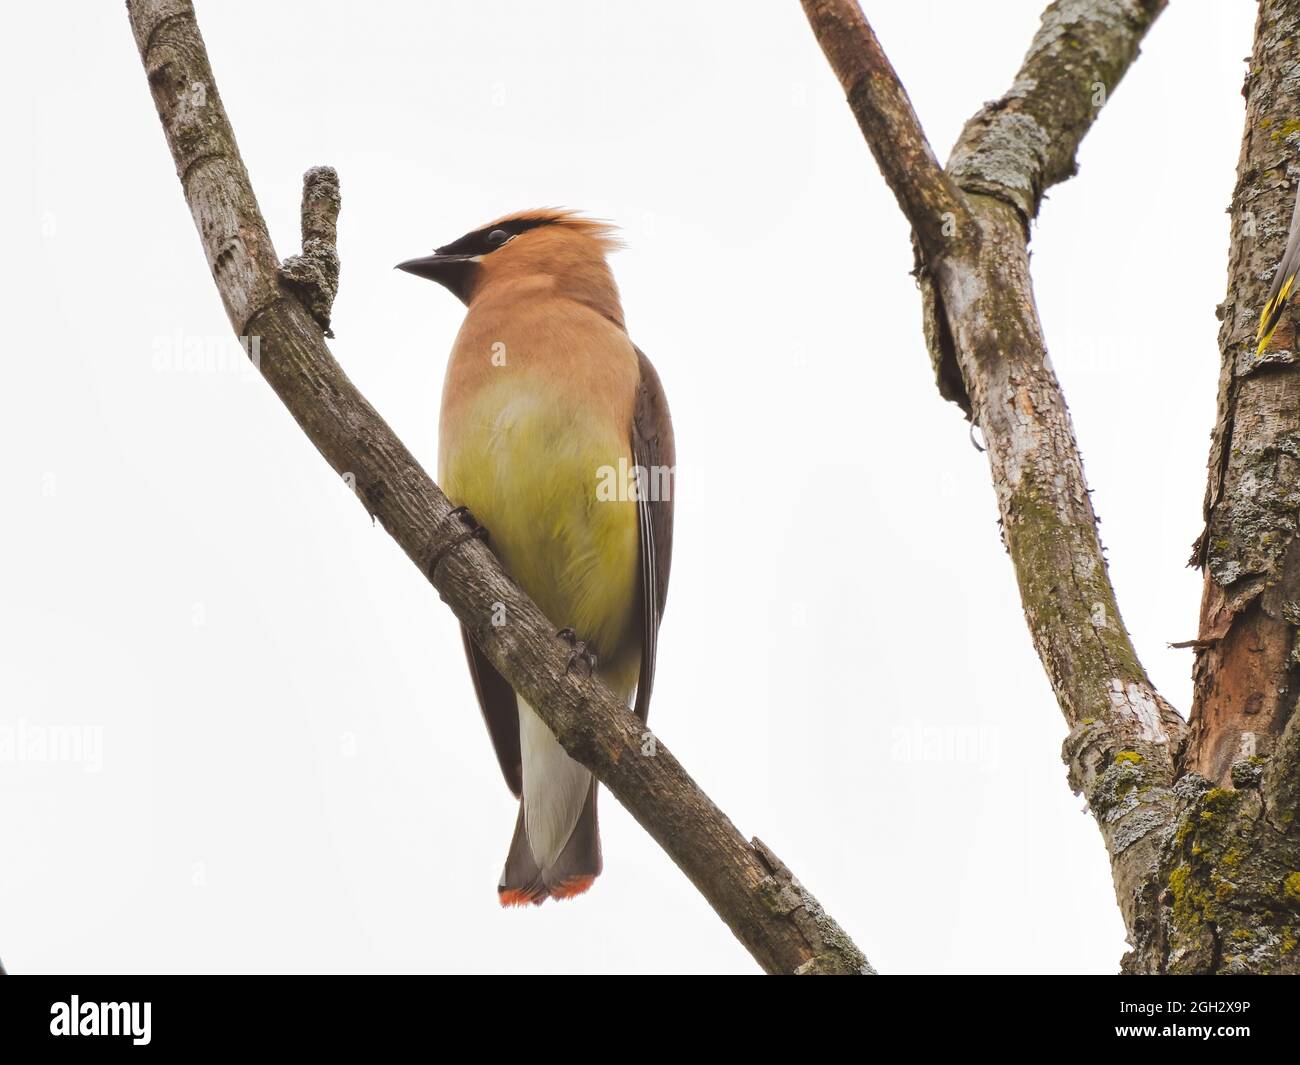 Waxwing on a Branch: Un oiseau de cèdre à la cire montre son profil lorsqu'il est perché sur une branche d'arbre par un jour nuageux Banque D'Images